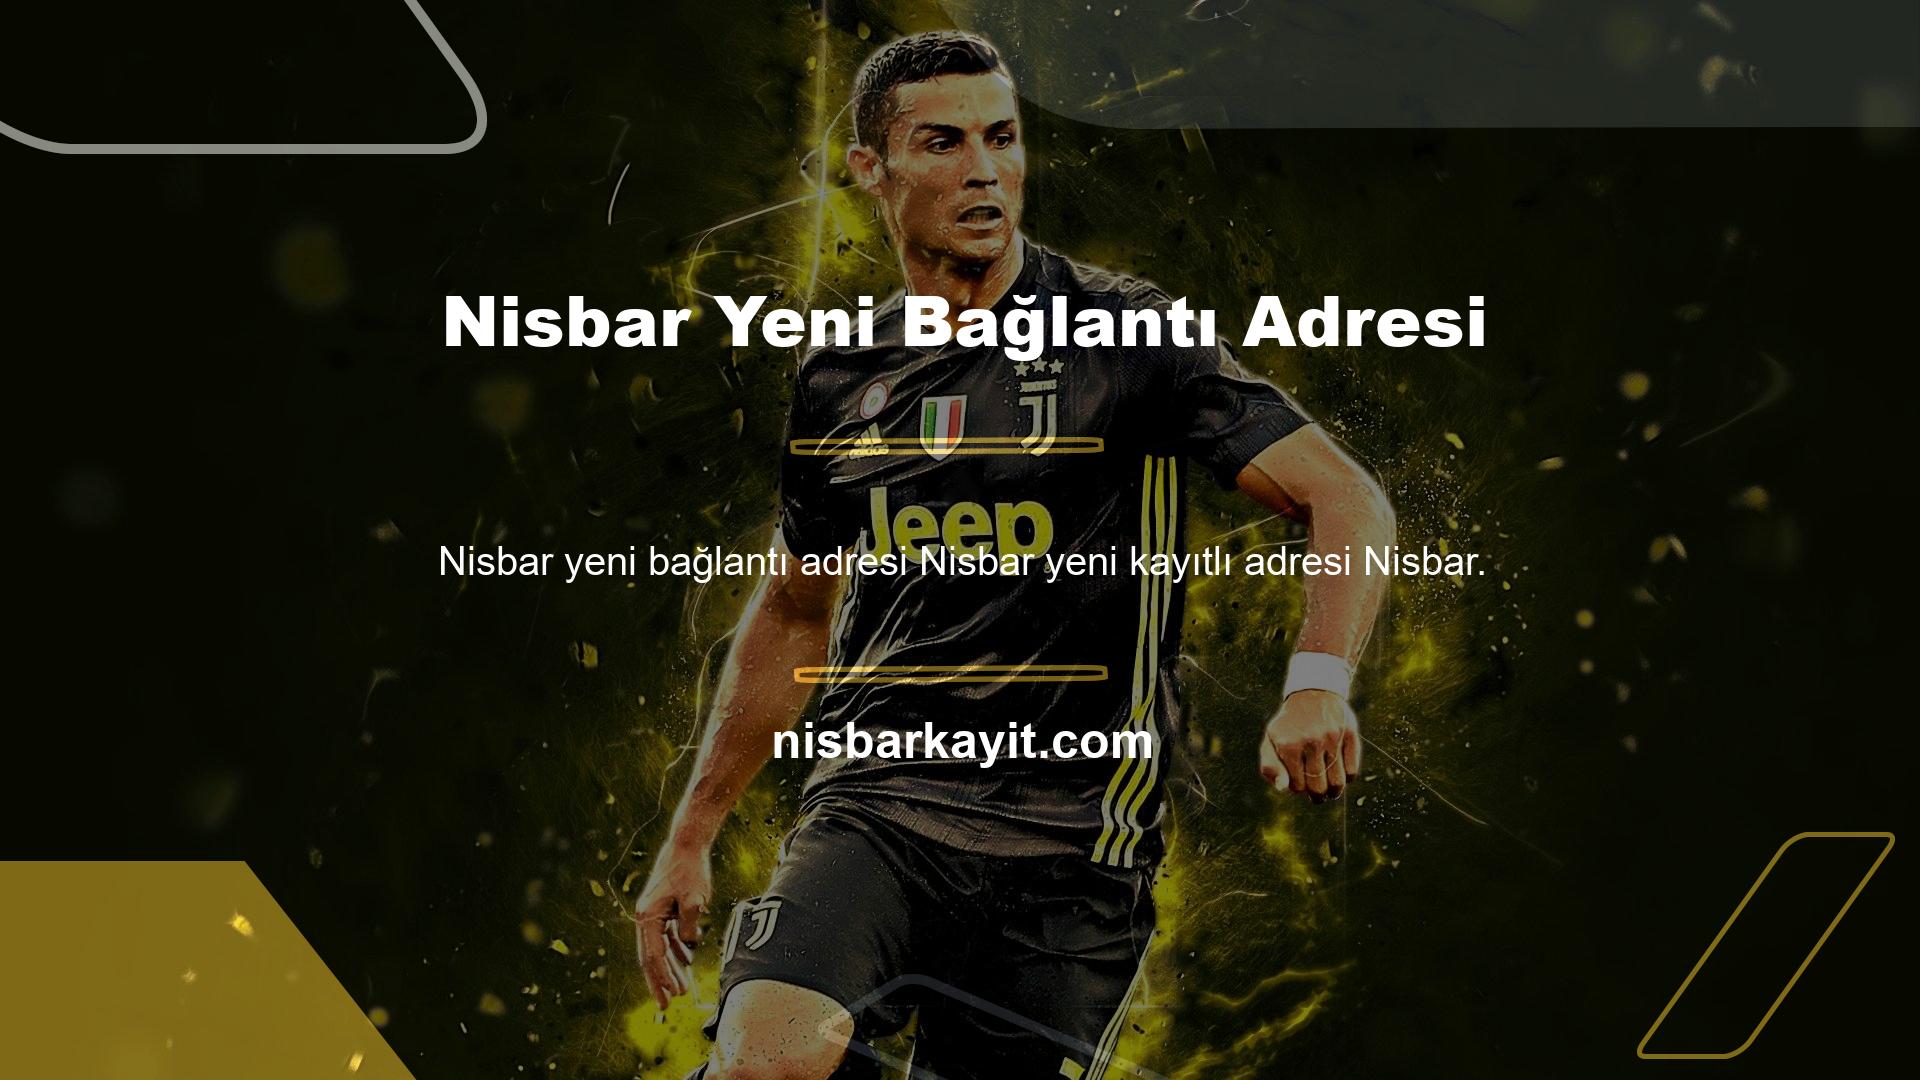 com giriş adresi üzerinden hizmet veren Nisbar sitesi, bu sitenin kapatılmasının ardından Nisbar